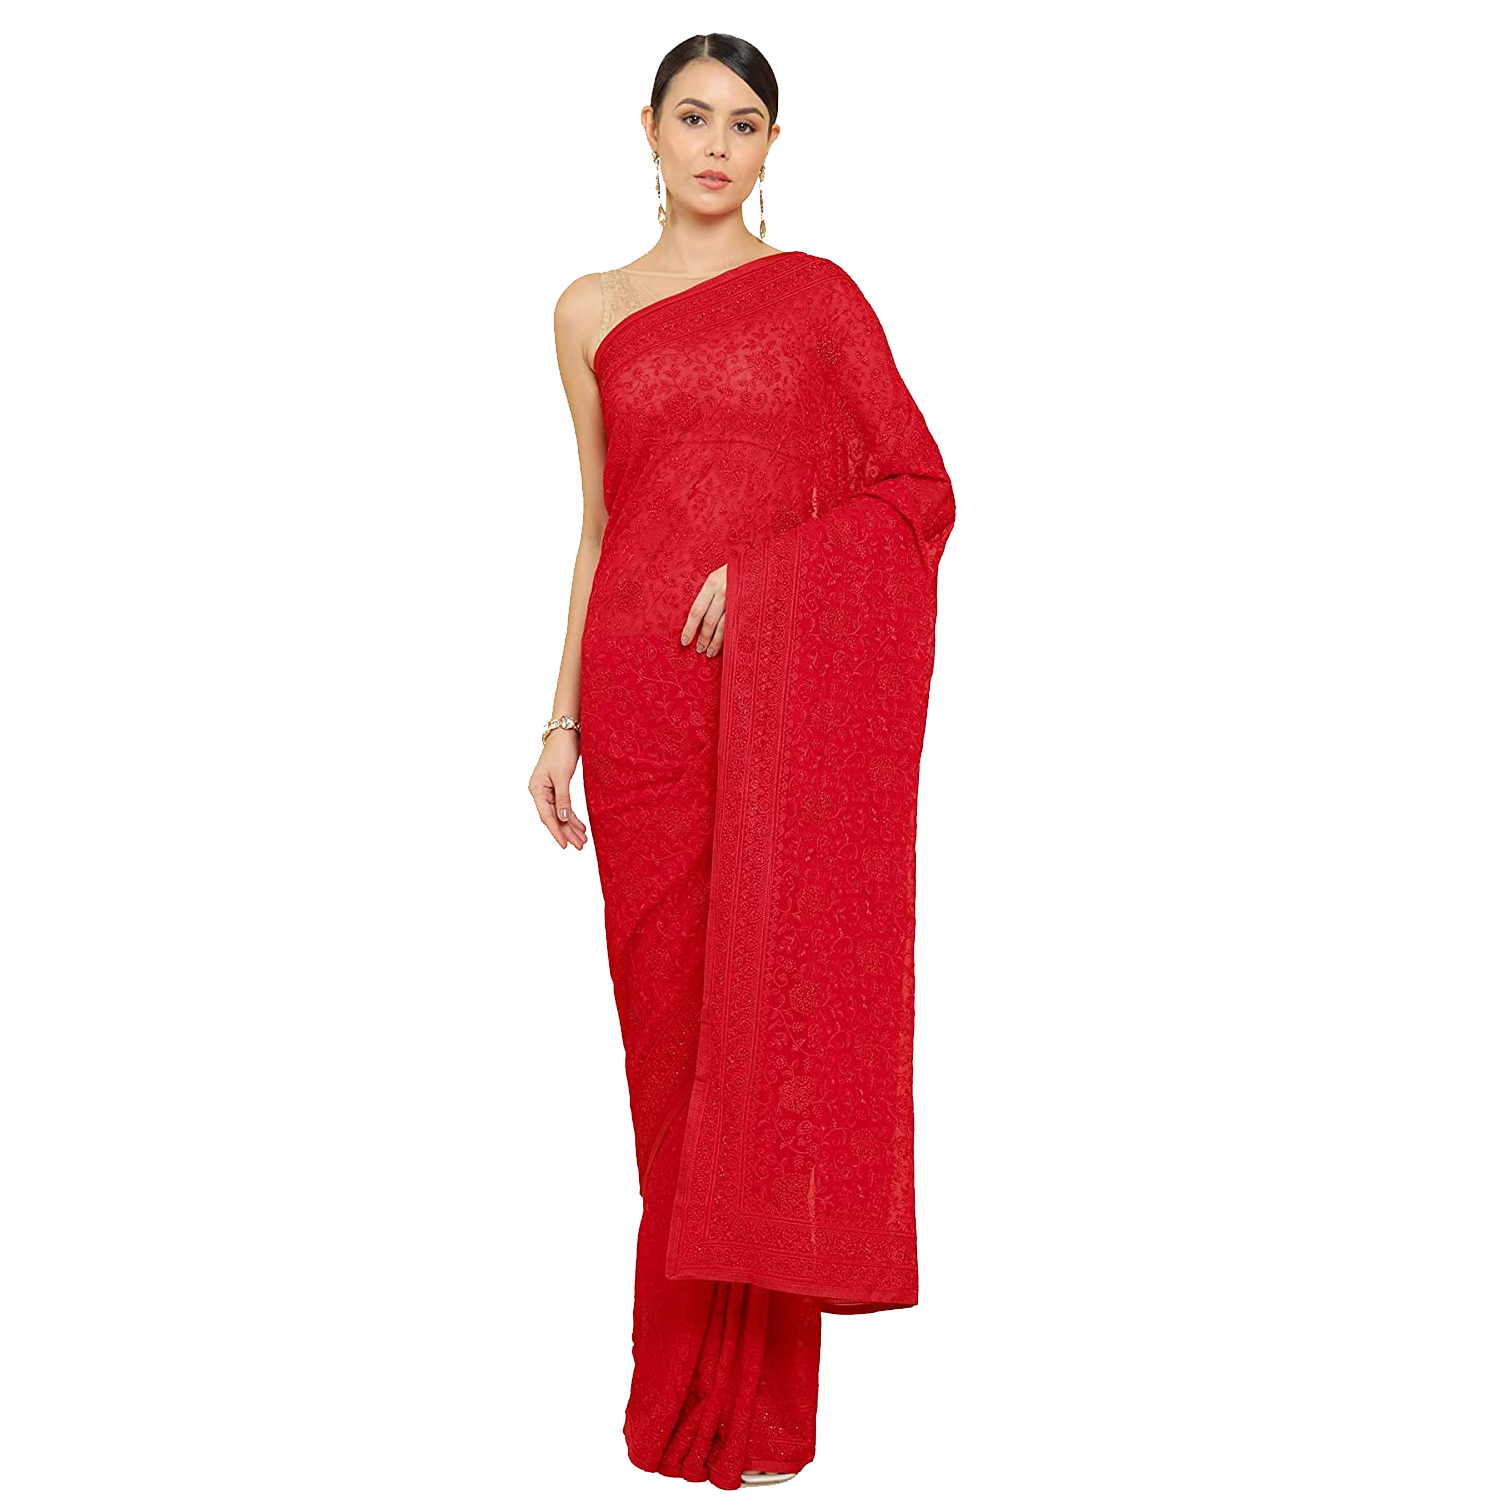 Red Saree Transparent Image